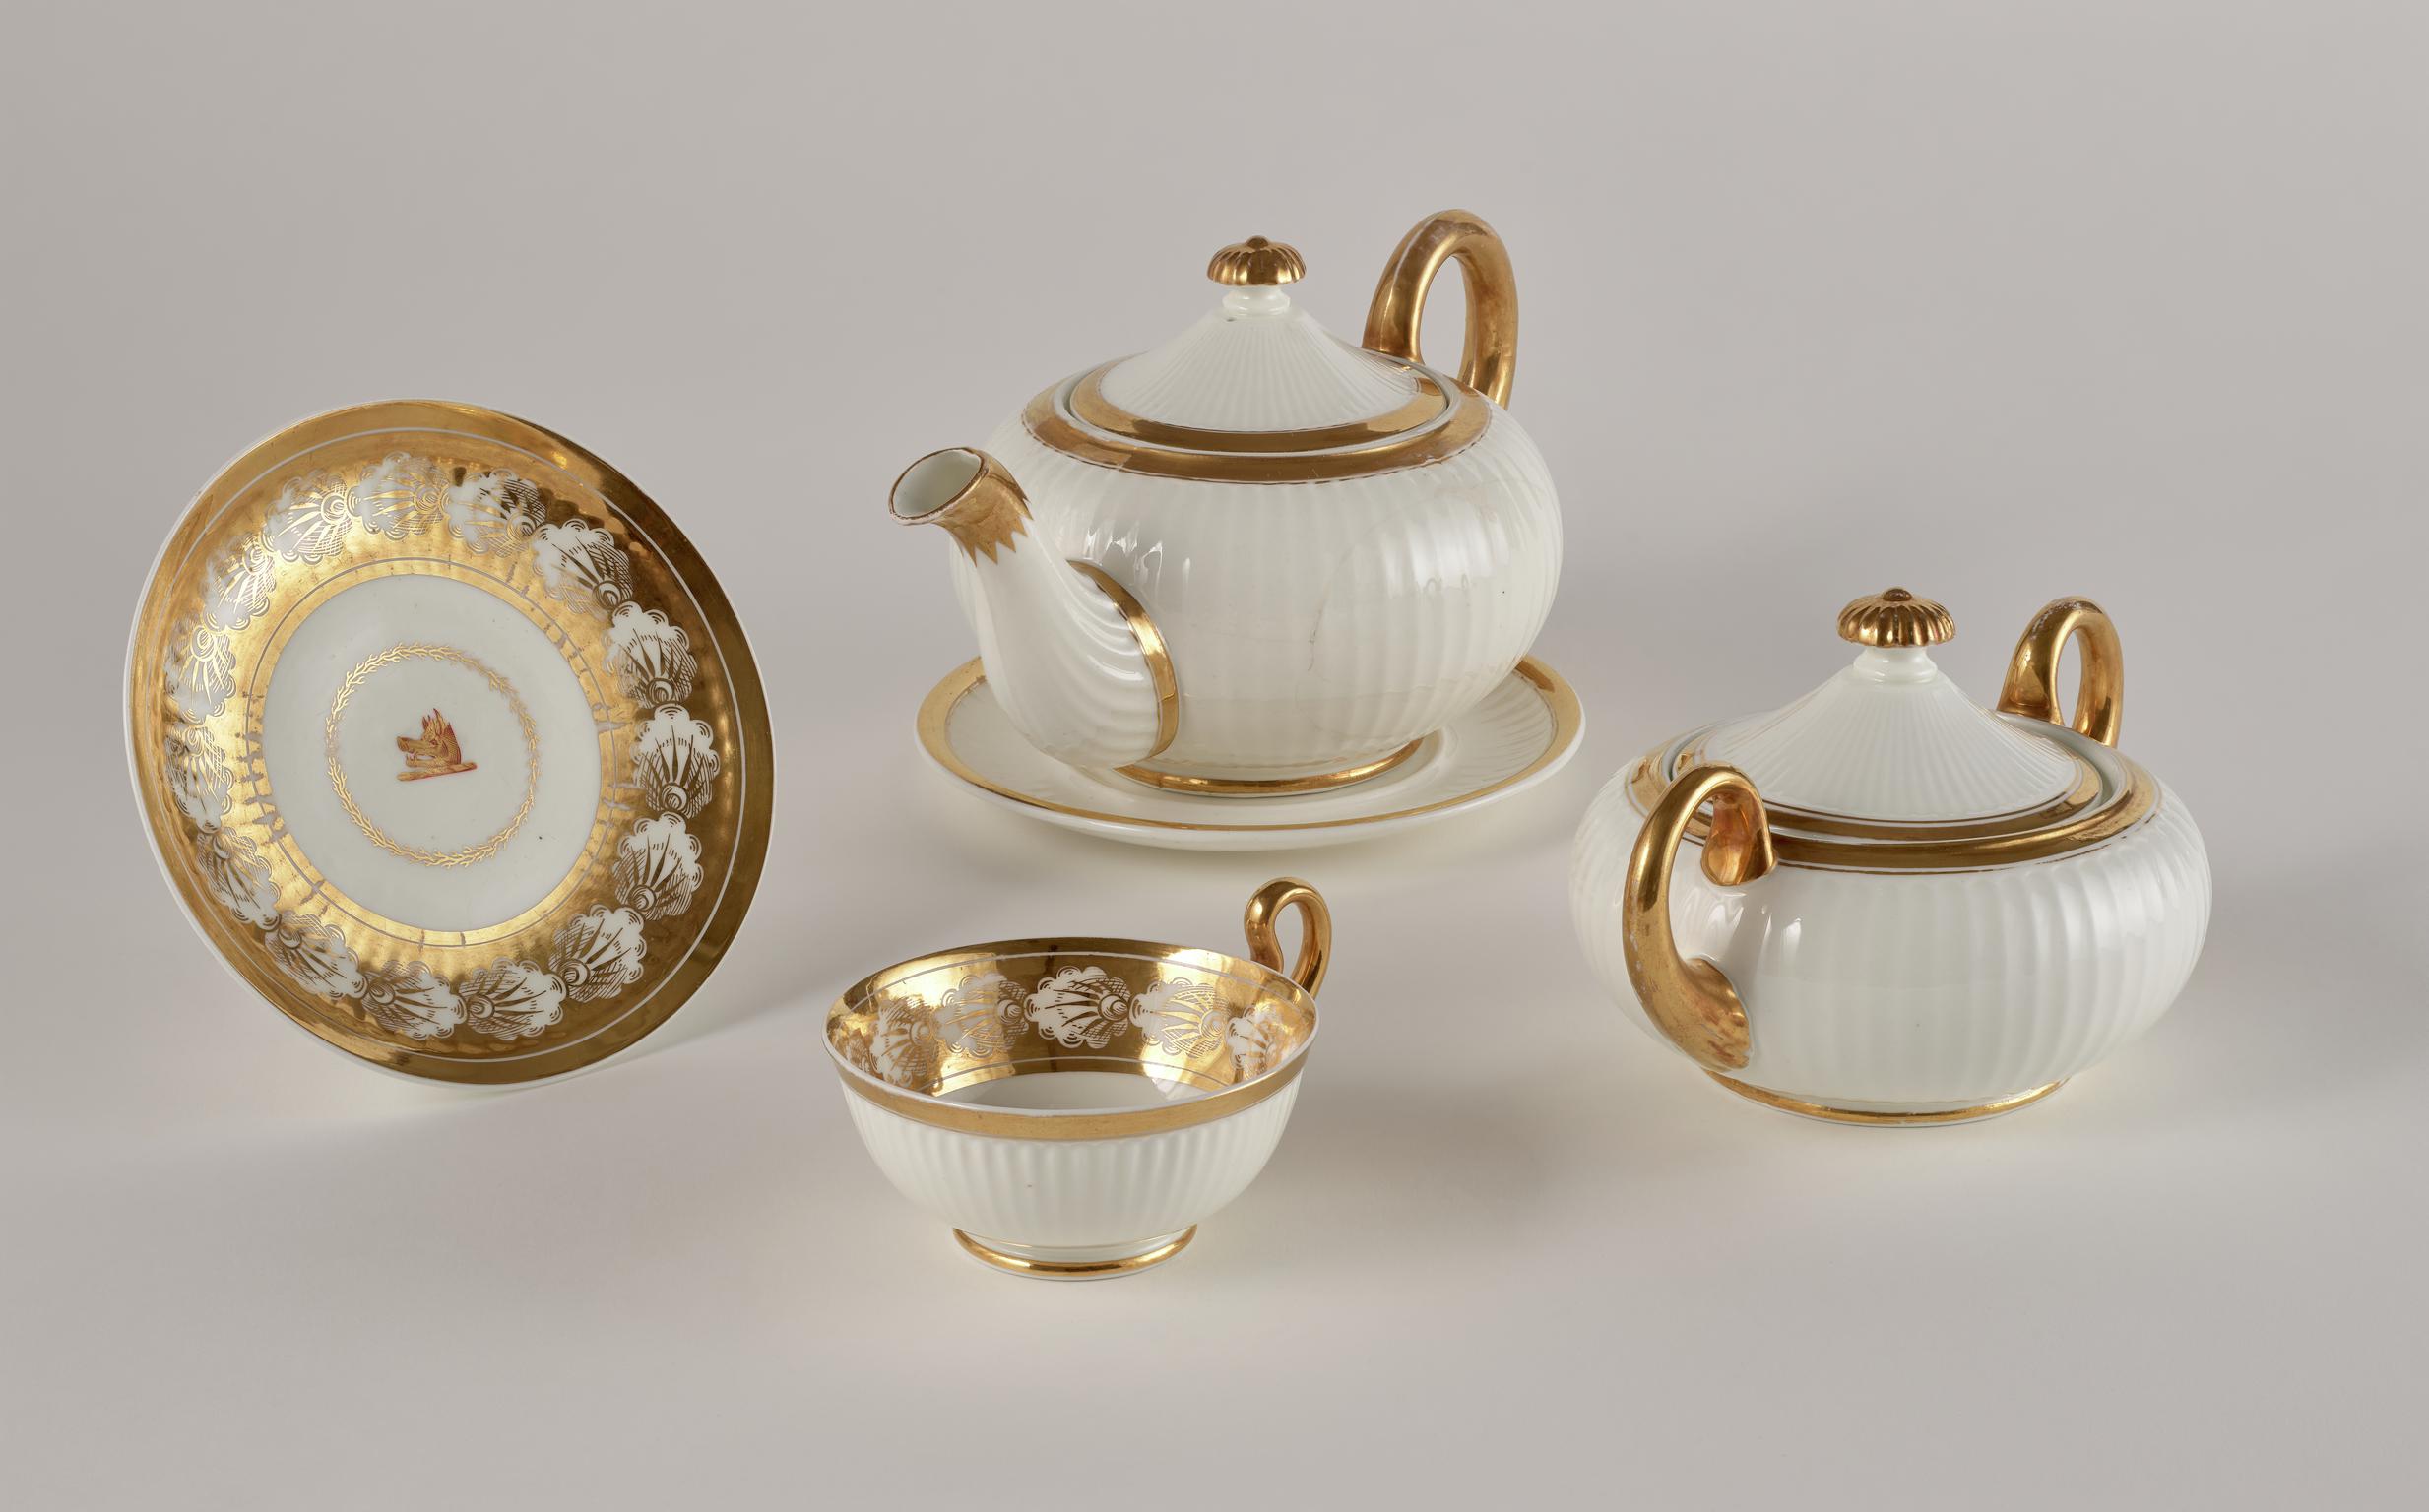 teapot &amp; stand, sugar bowl, cup &amp; saucer, 1816-1825